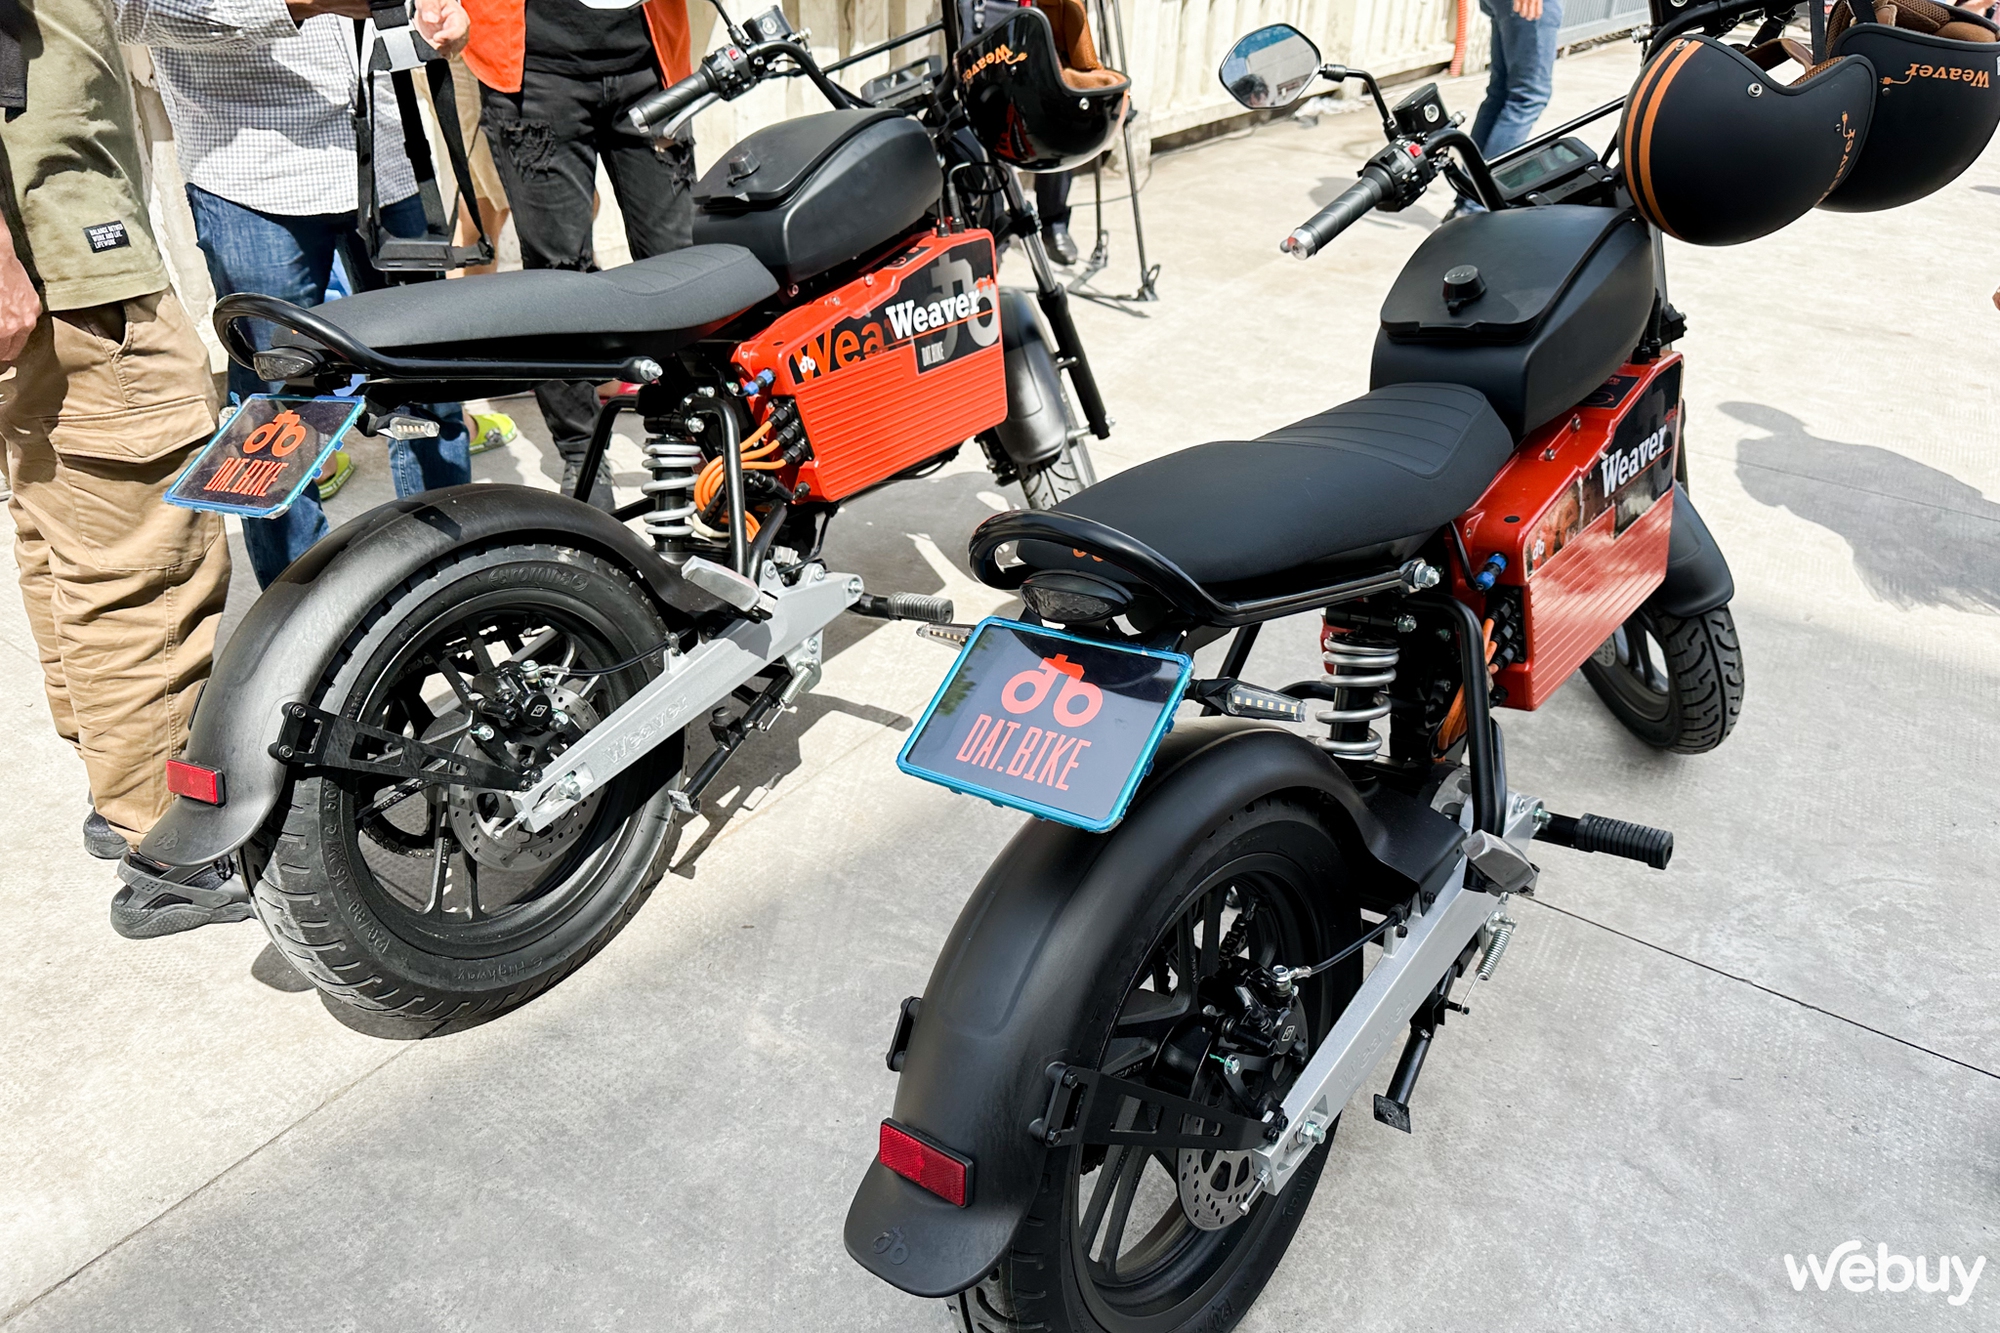 Dat Bike ra mắt xe may điện Weaver++, giá 65.9 triệu đồng - Ảnh 2.